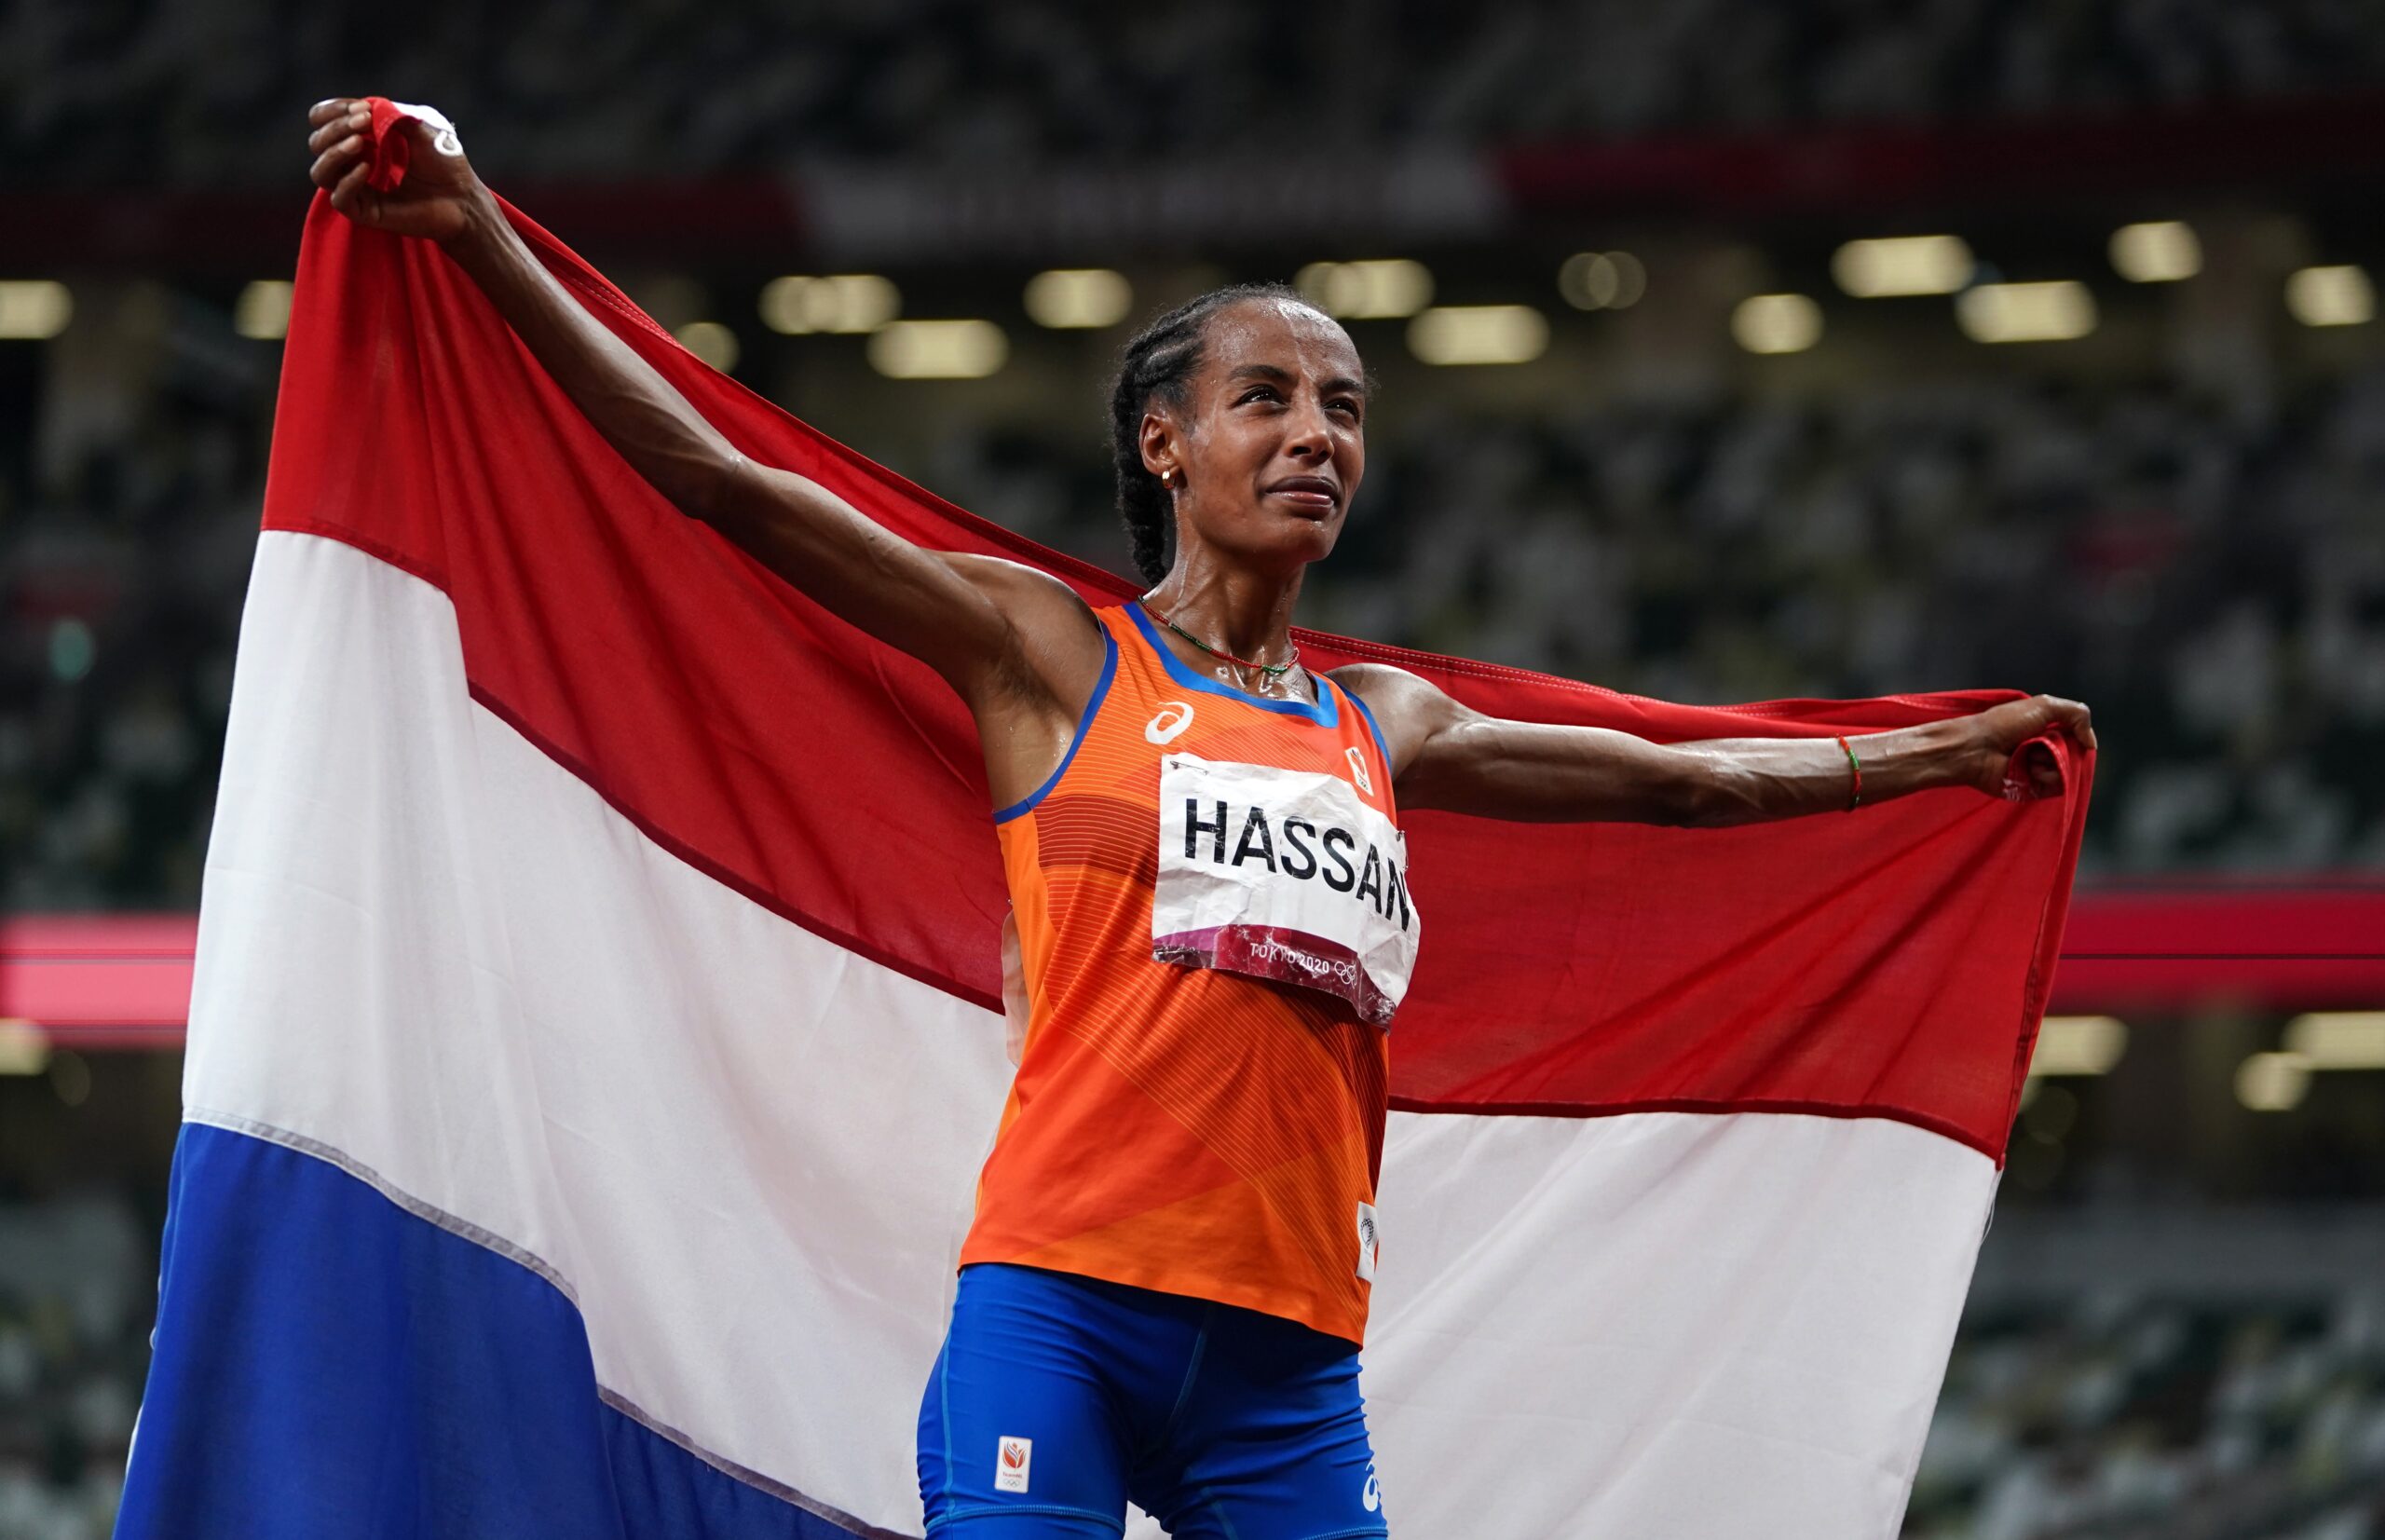 Deze Nederlandse deelnemers hopen een olympische gouden medaillecampagne te leiden